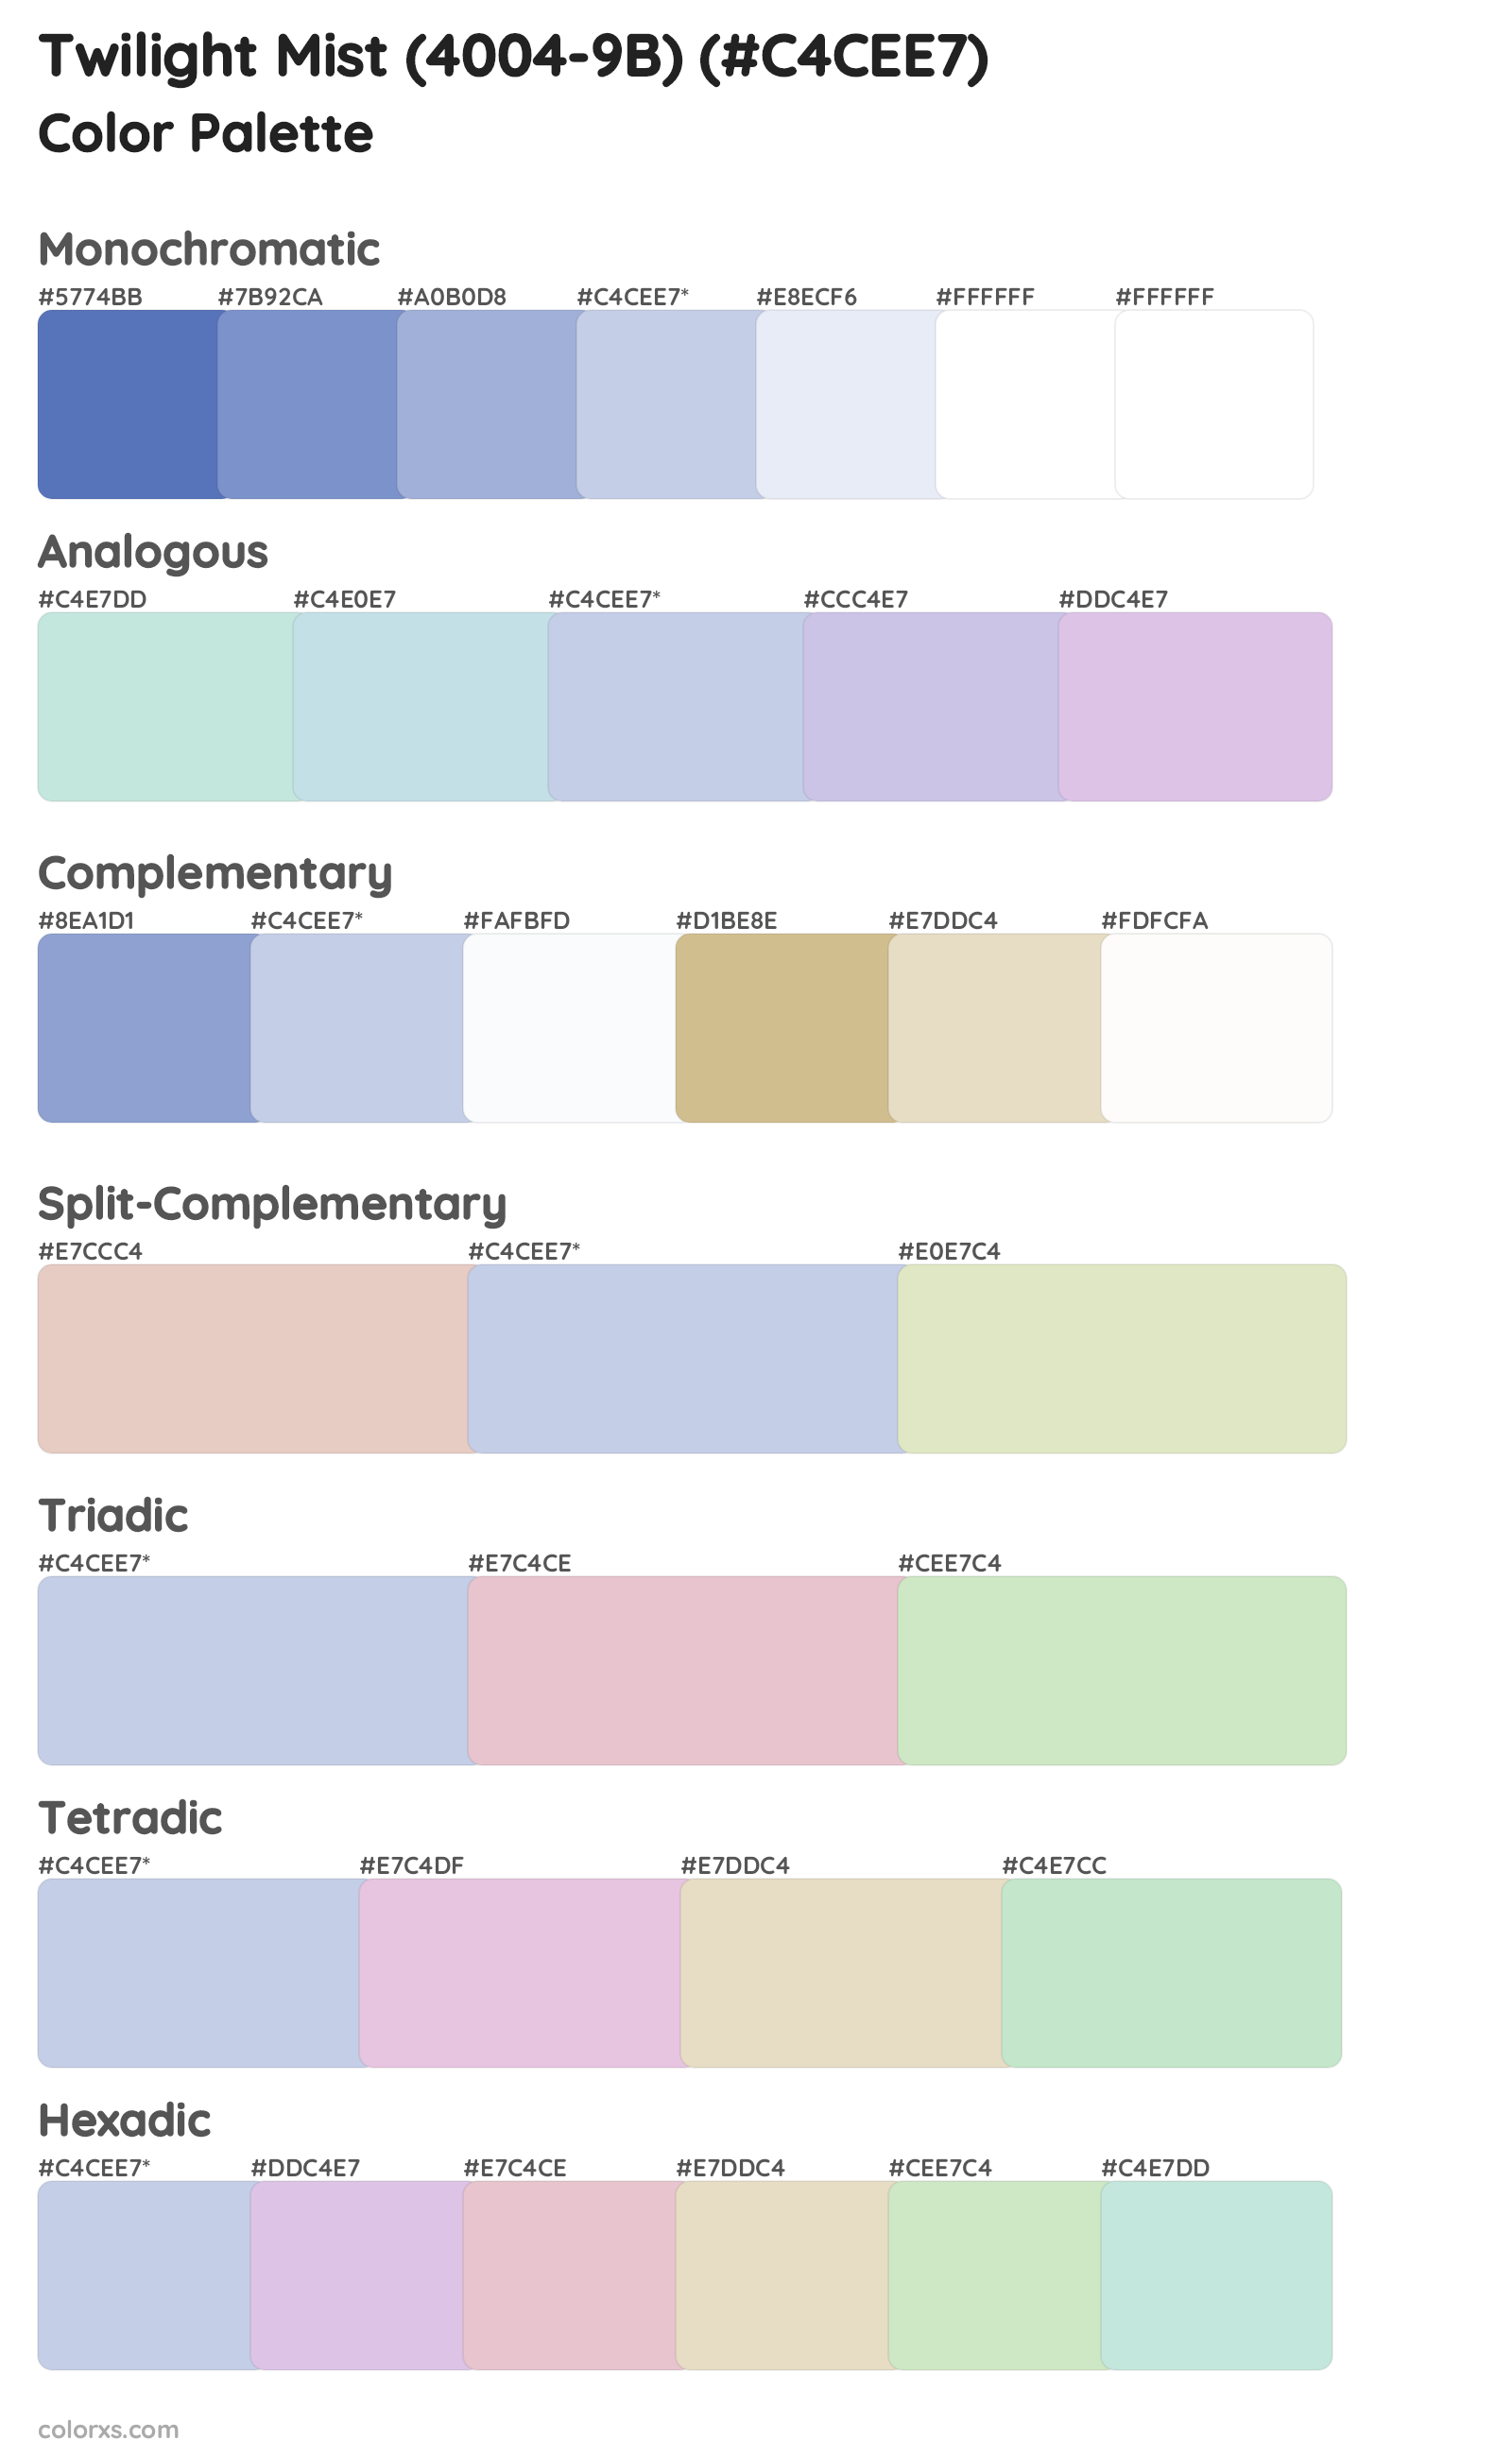 Twilight Mist (4004-9B) Color Scheme Palettes